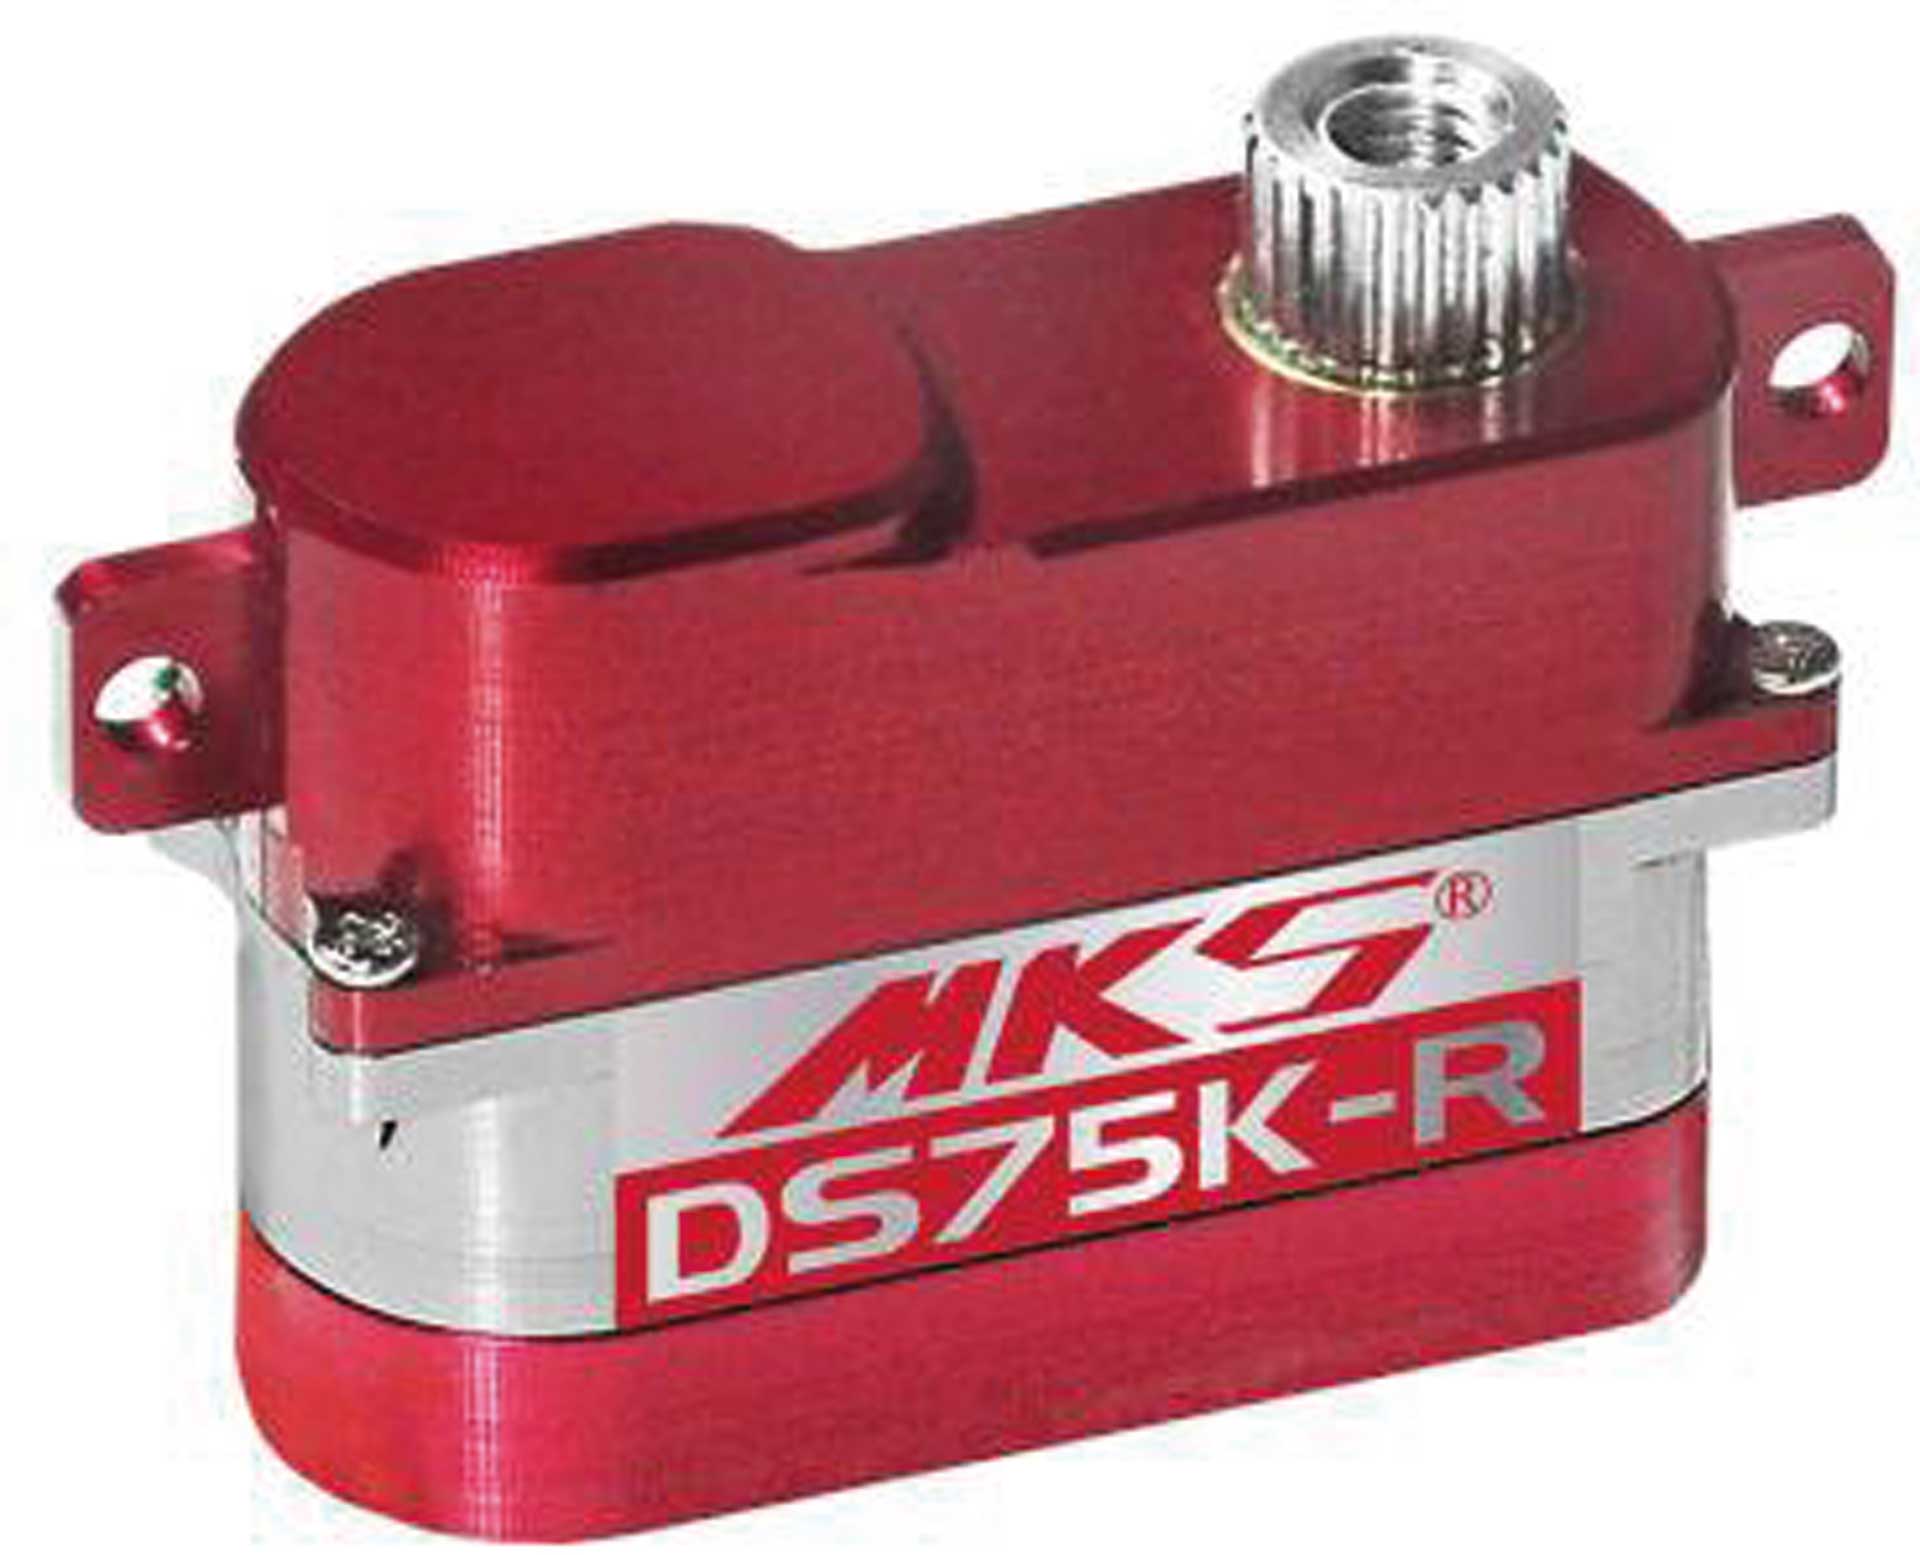 MKS DS75K-R Digital Servo liegende Montage für DLG / HLG / F3K...